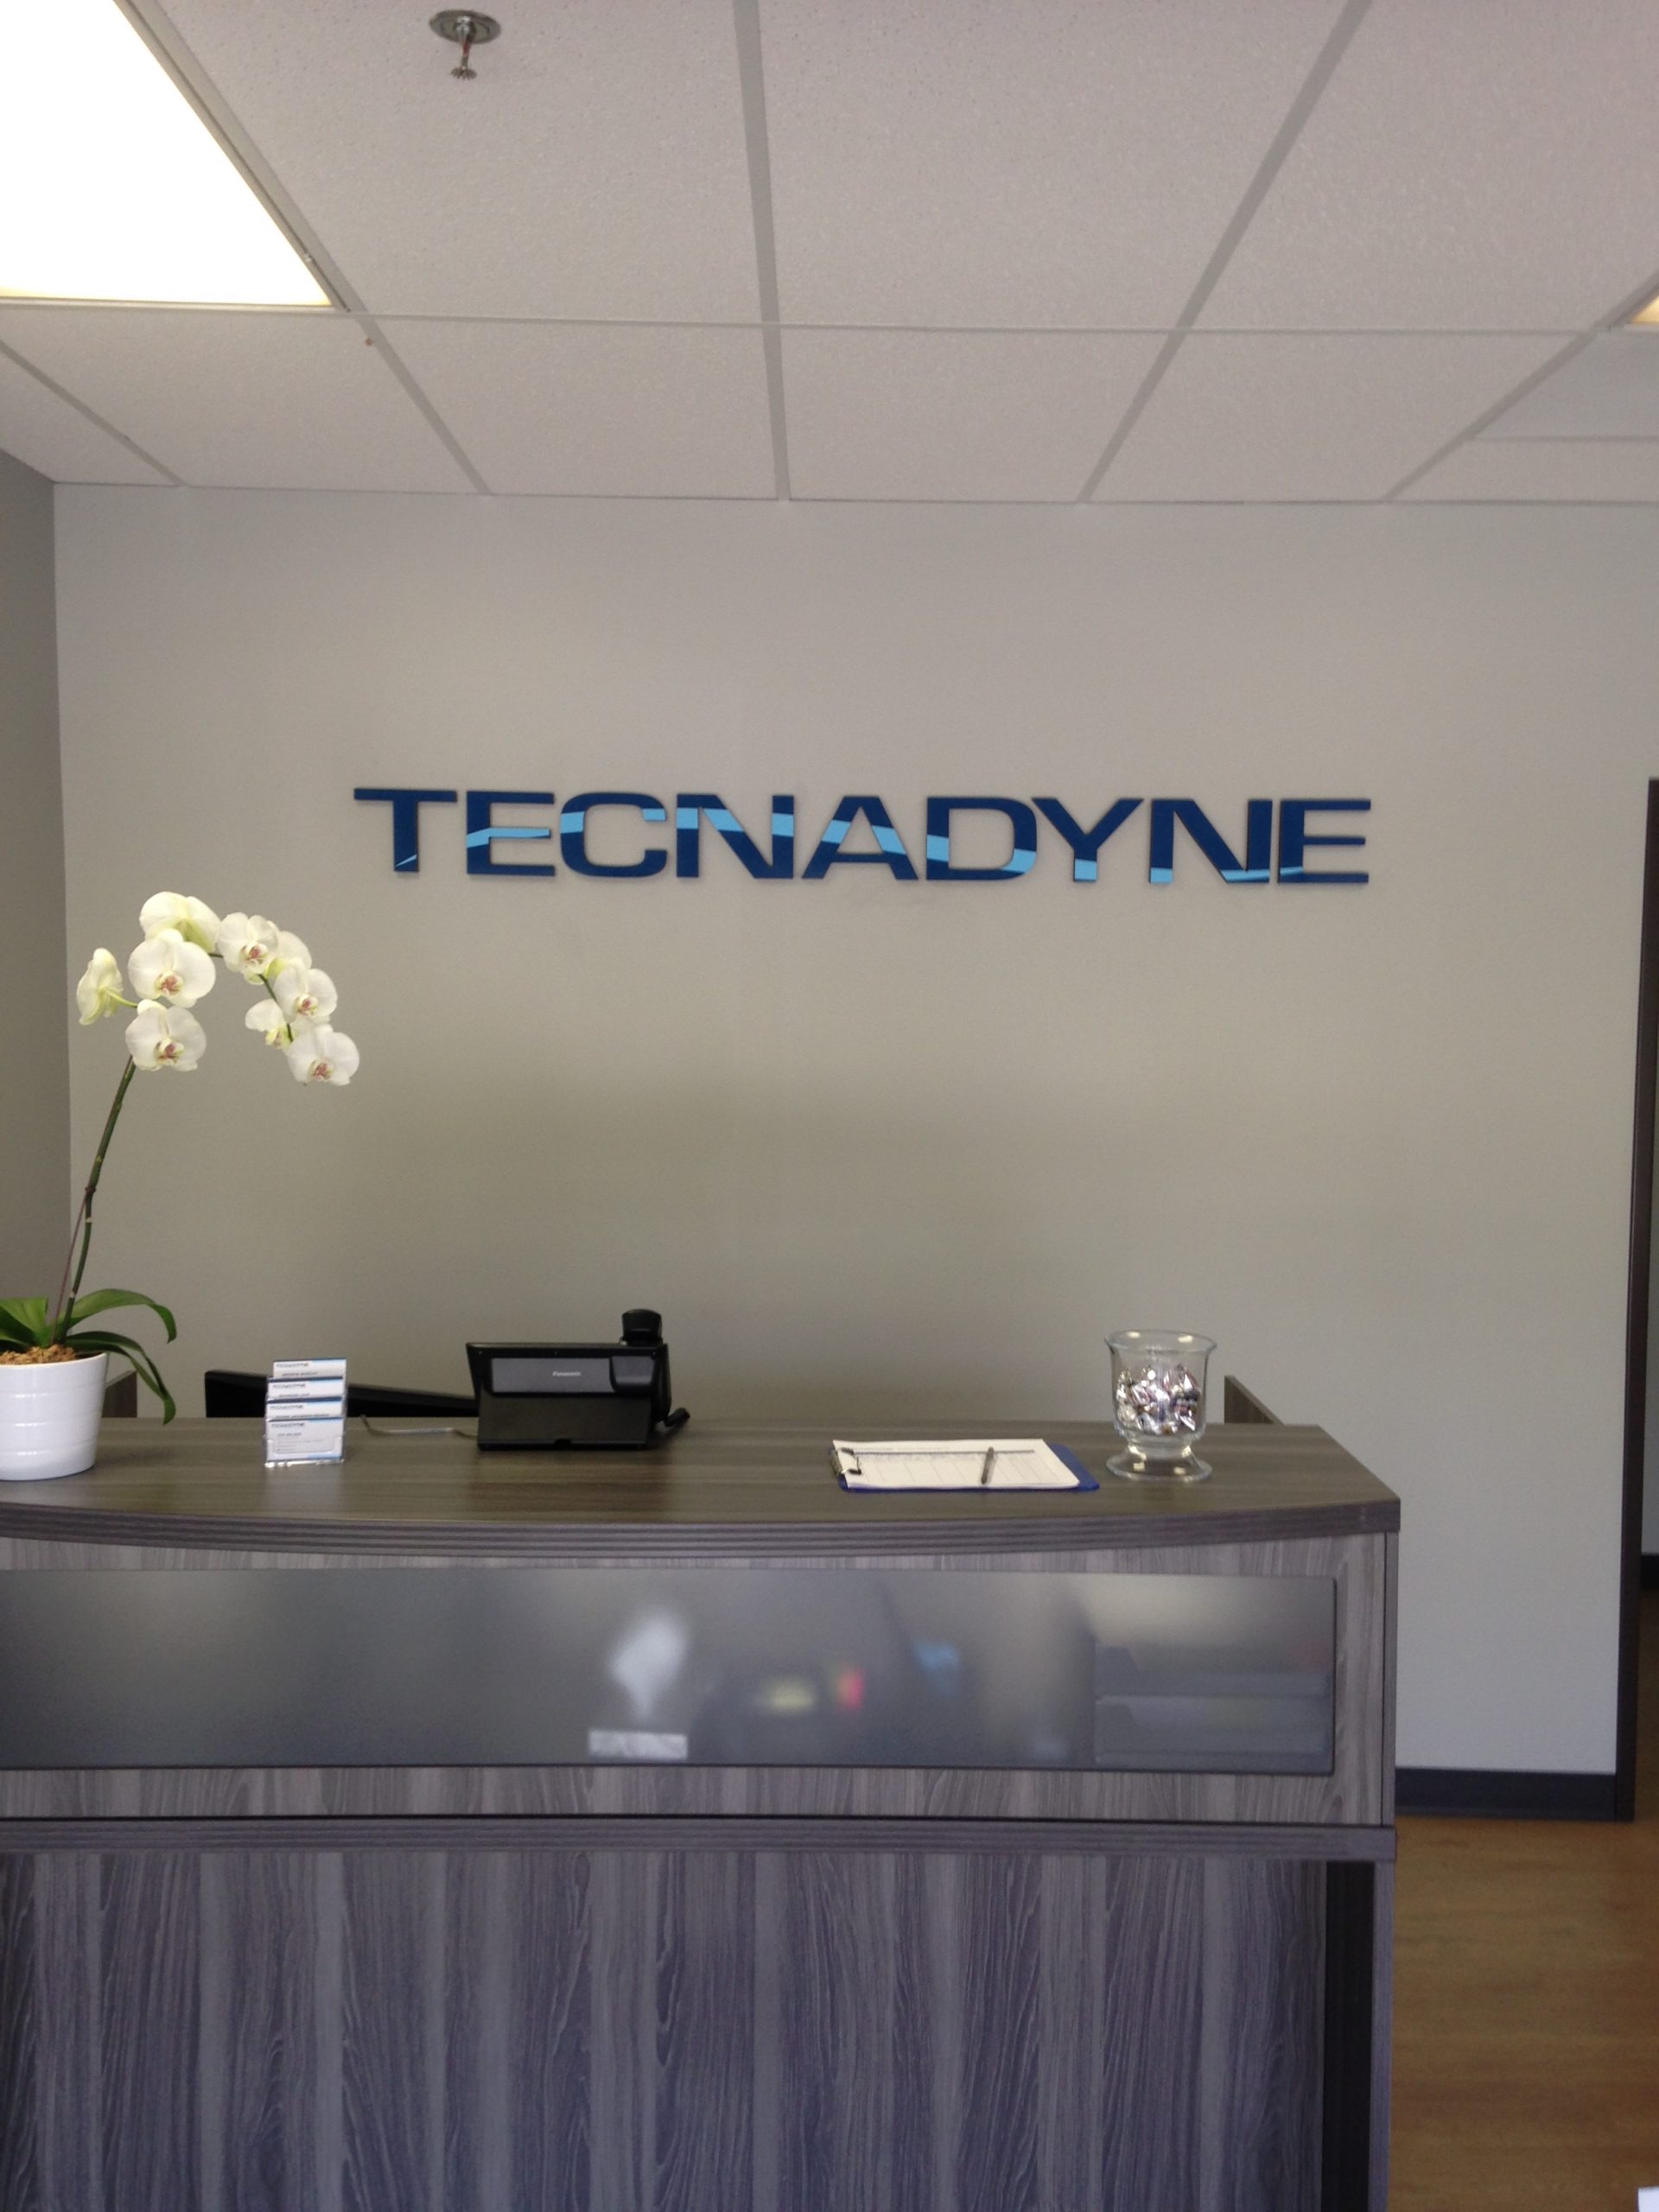 Lobby Sign for Tecnadyne